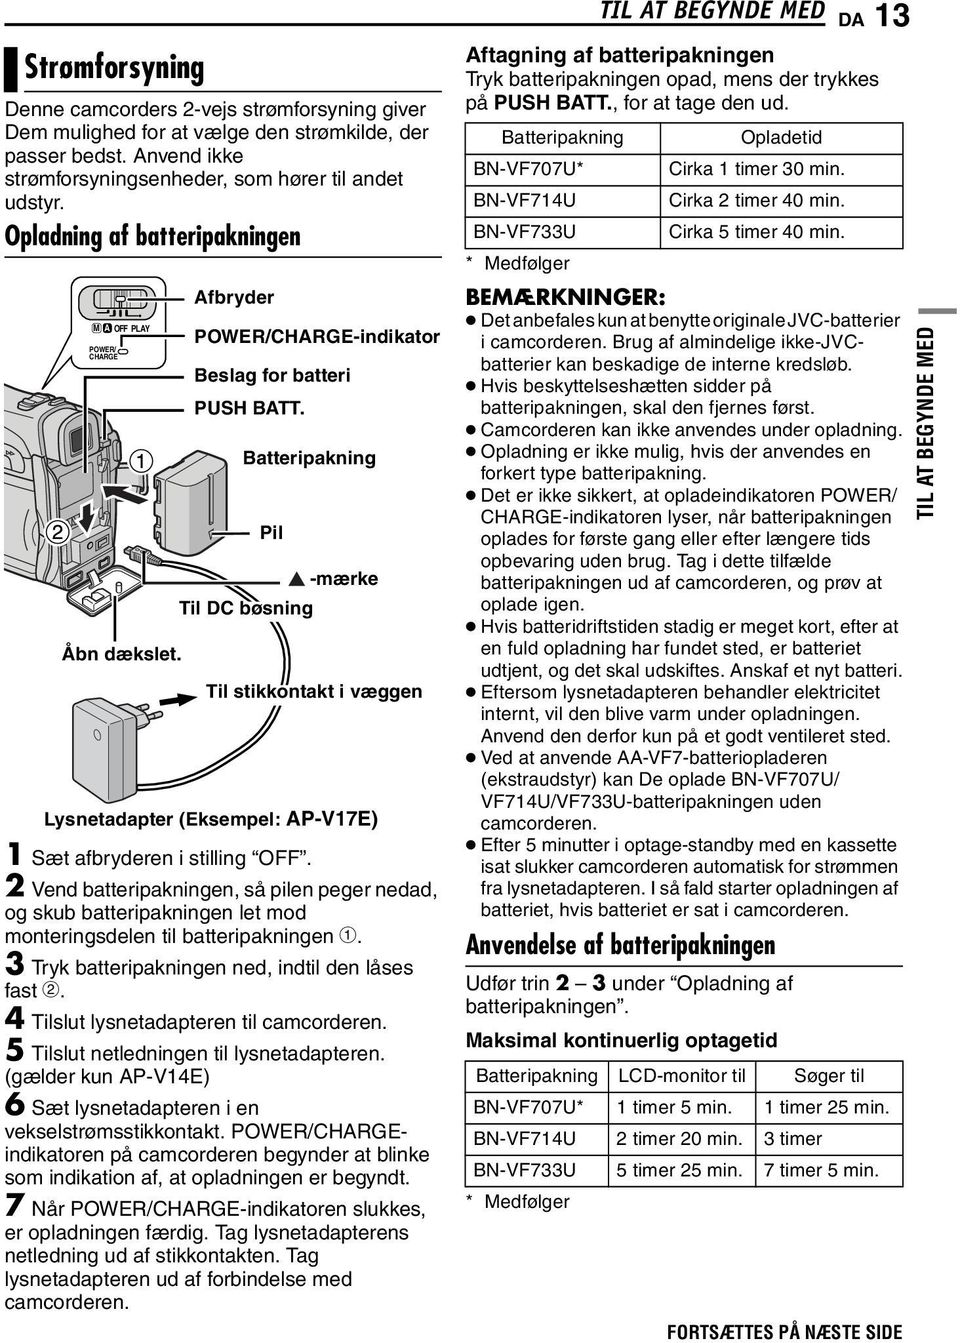 Batteripakning Pil Til DC bøsning -mærke Til stikkontakt i væggen Lysnetadapter (Eksempel: AP-V17E) 1 Sæt afbryderen i stilling OFF.